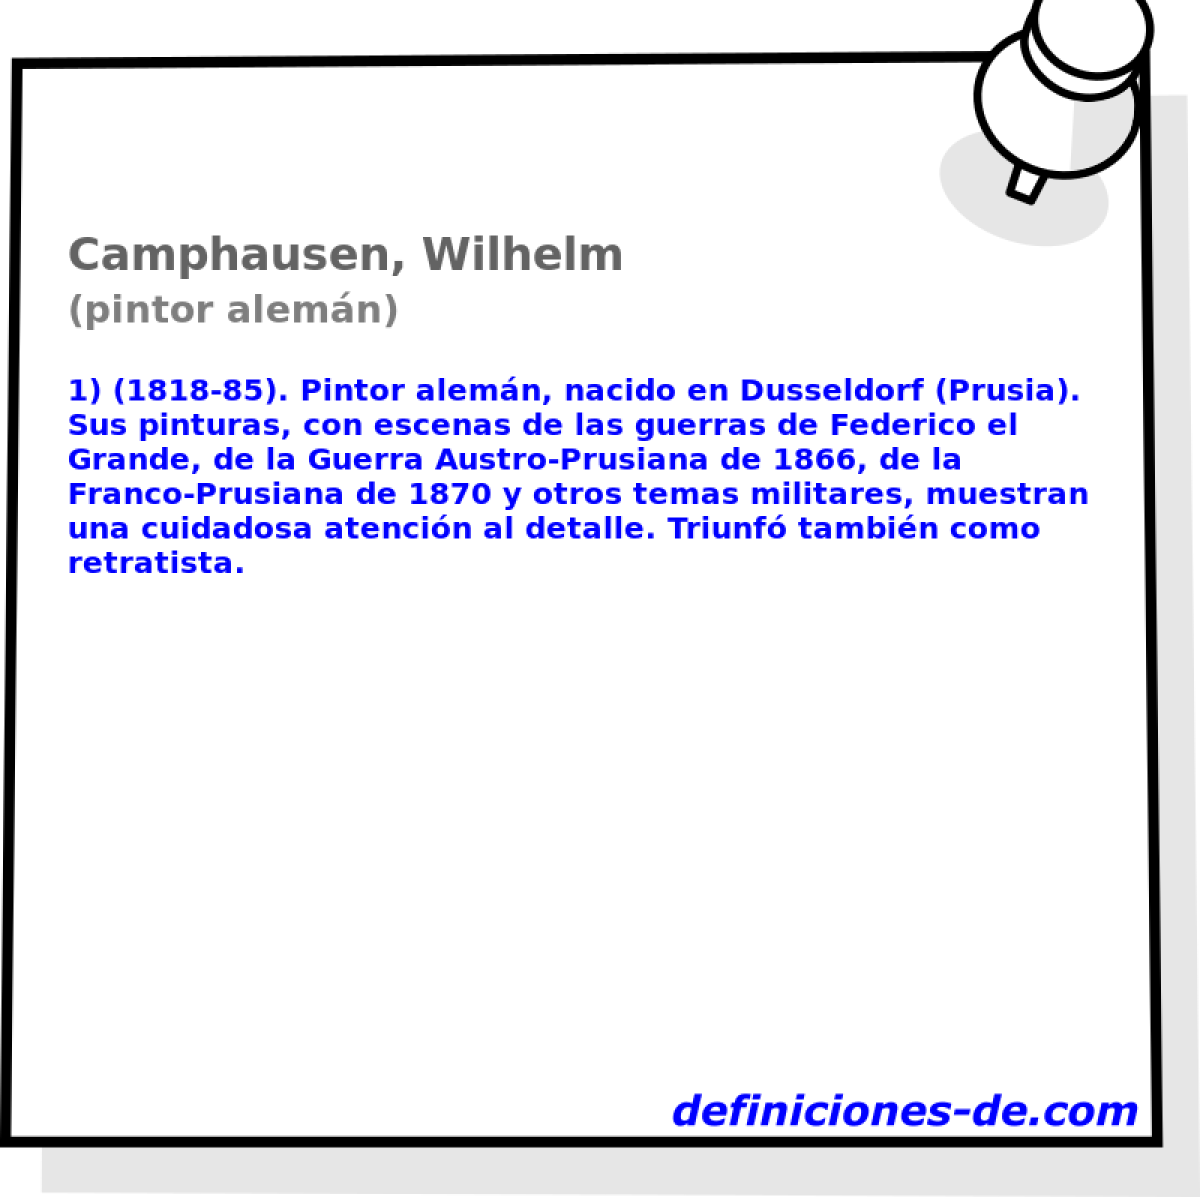 Camphausen, Wilhelm (pintor alemn)